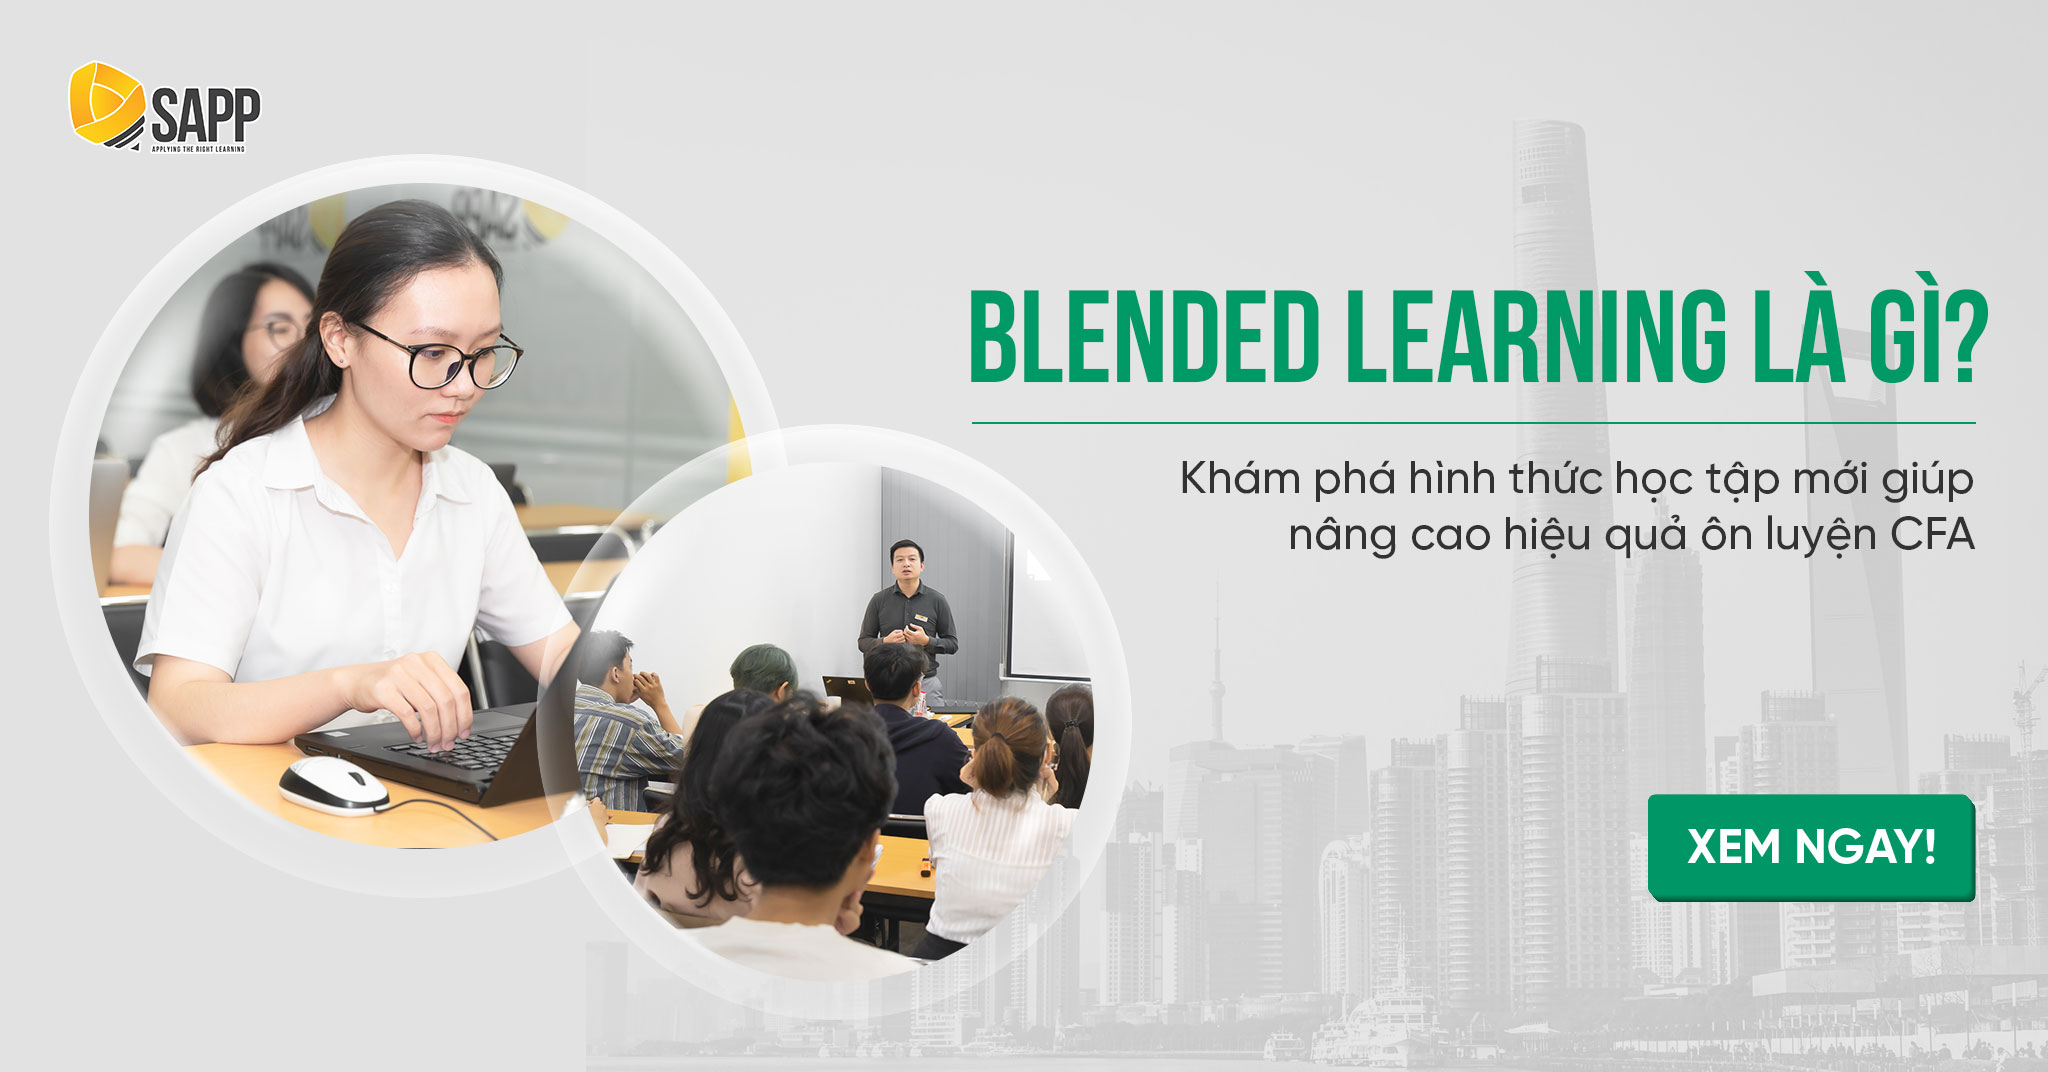 Blended Learning là gì? Khám phá hình thức học tập mới giúp nâng cao hiệu quả ôn luyện CFA